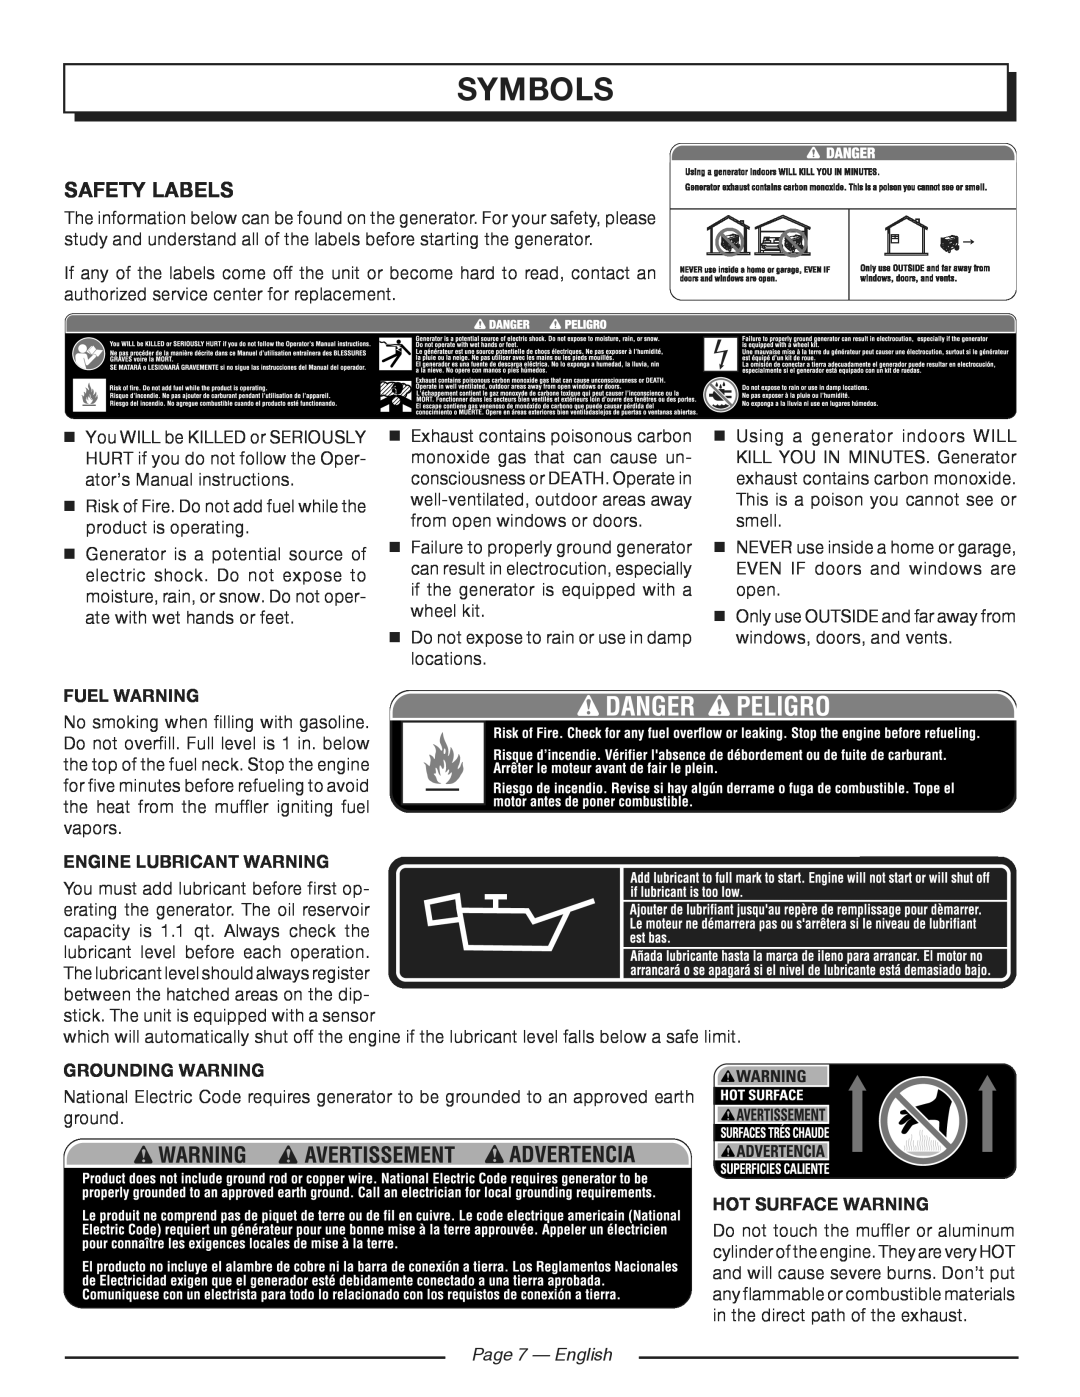 Homelite HG5700 manuel dutilisation symbols, Safety Labels, Page  - English 